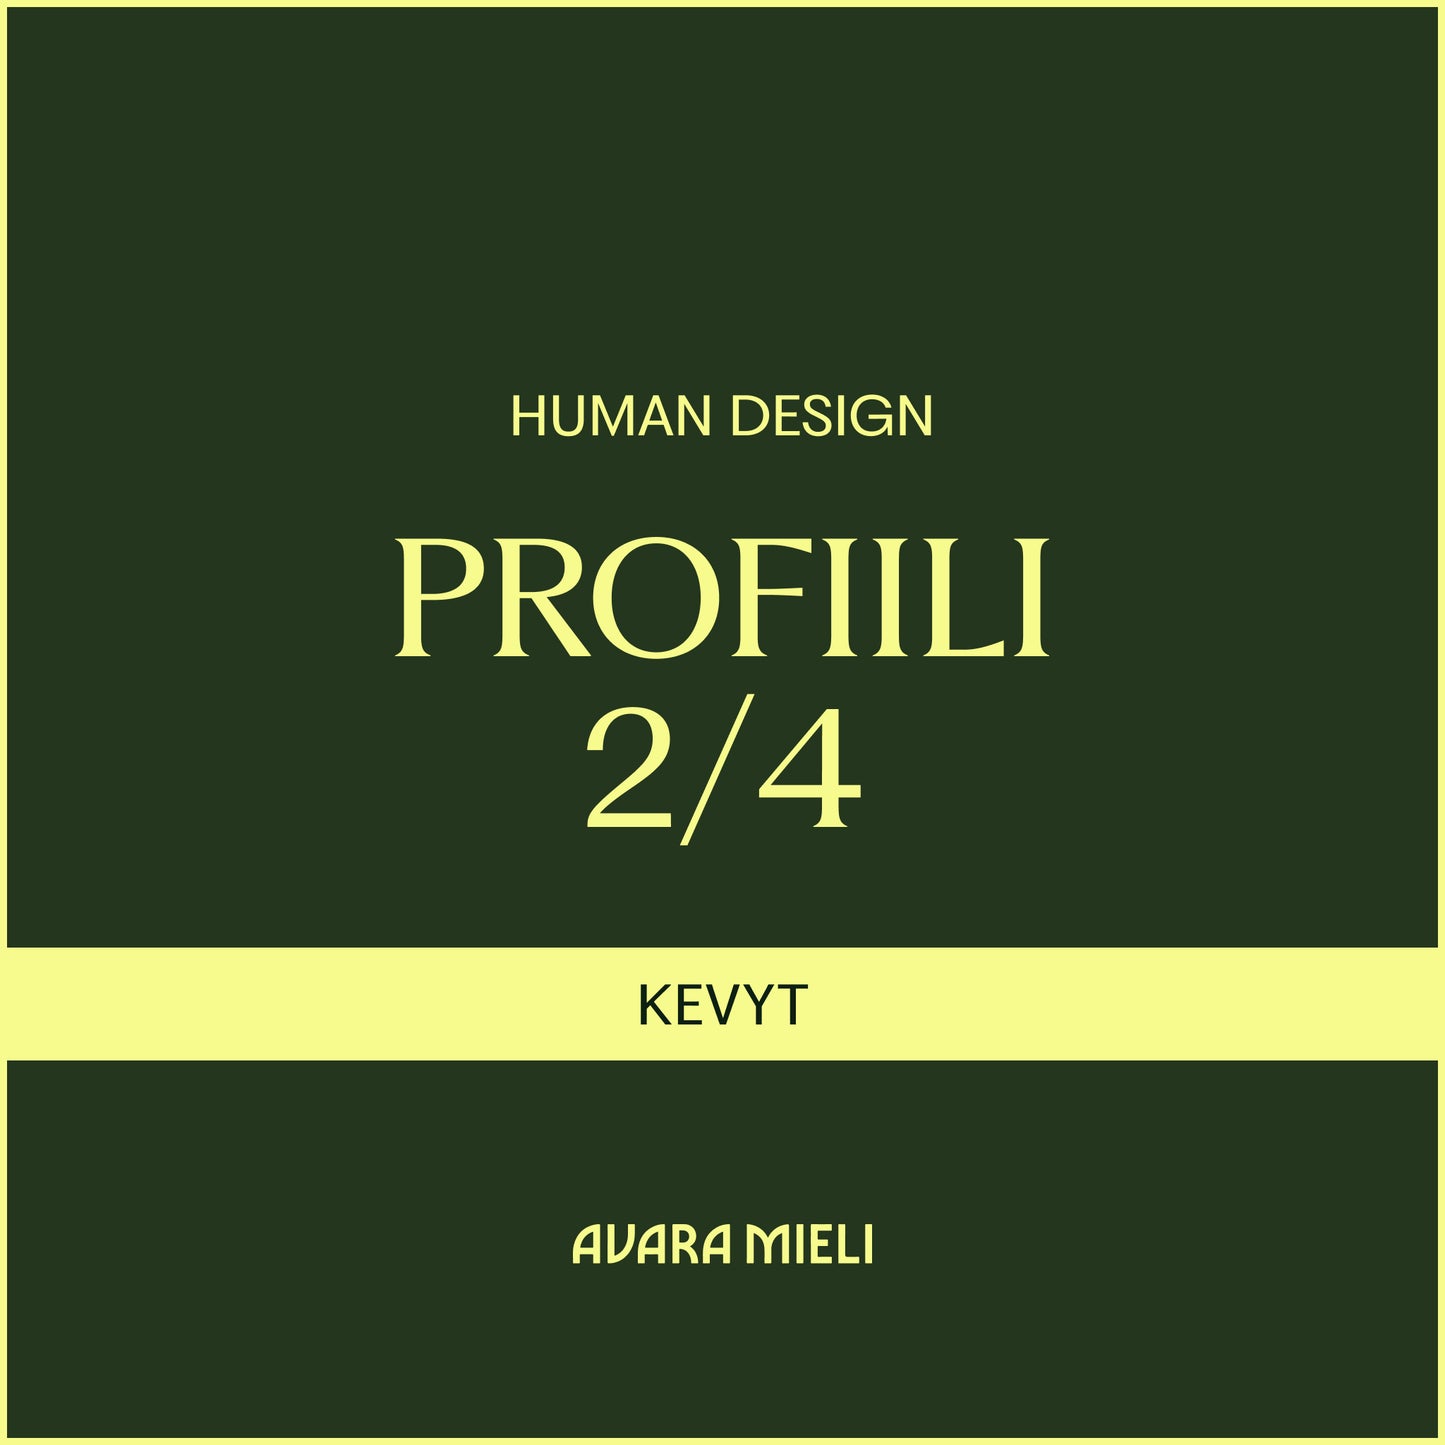 Human Design Profiili 2/4